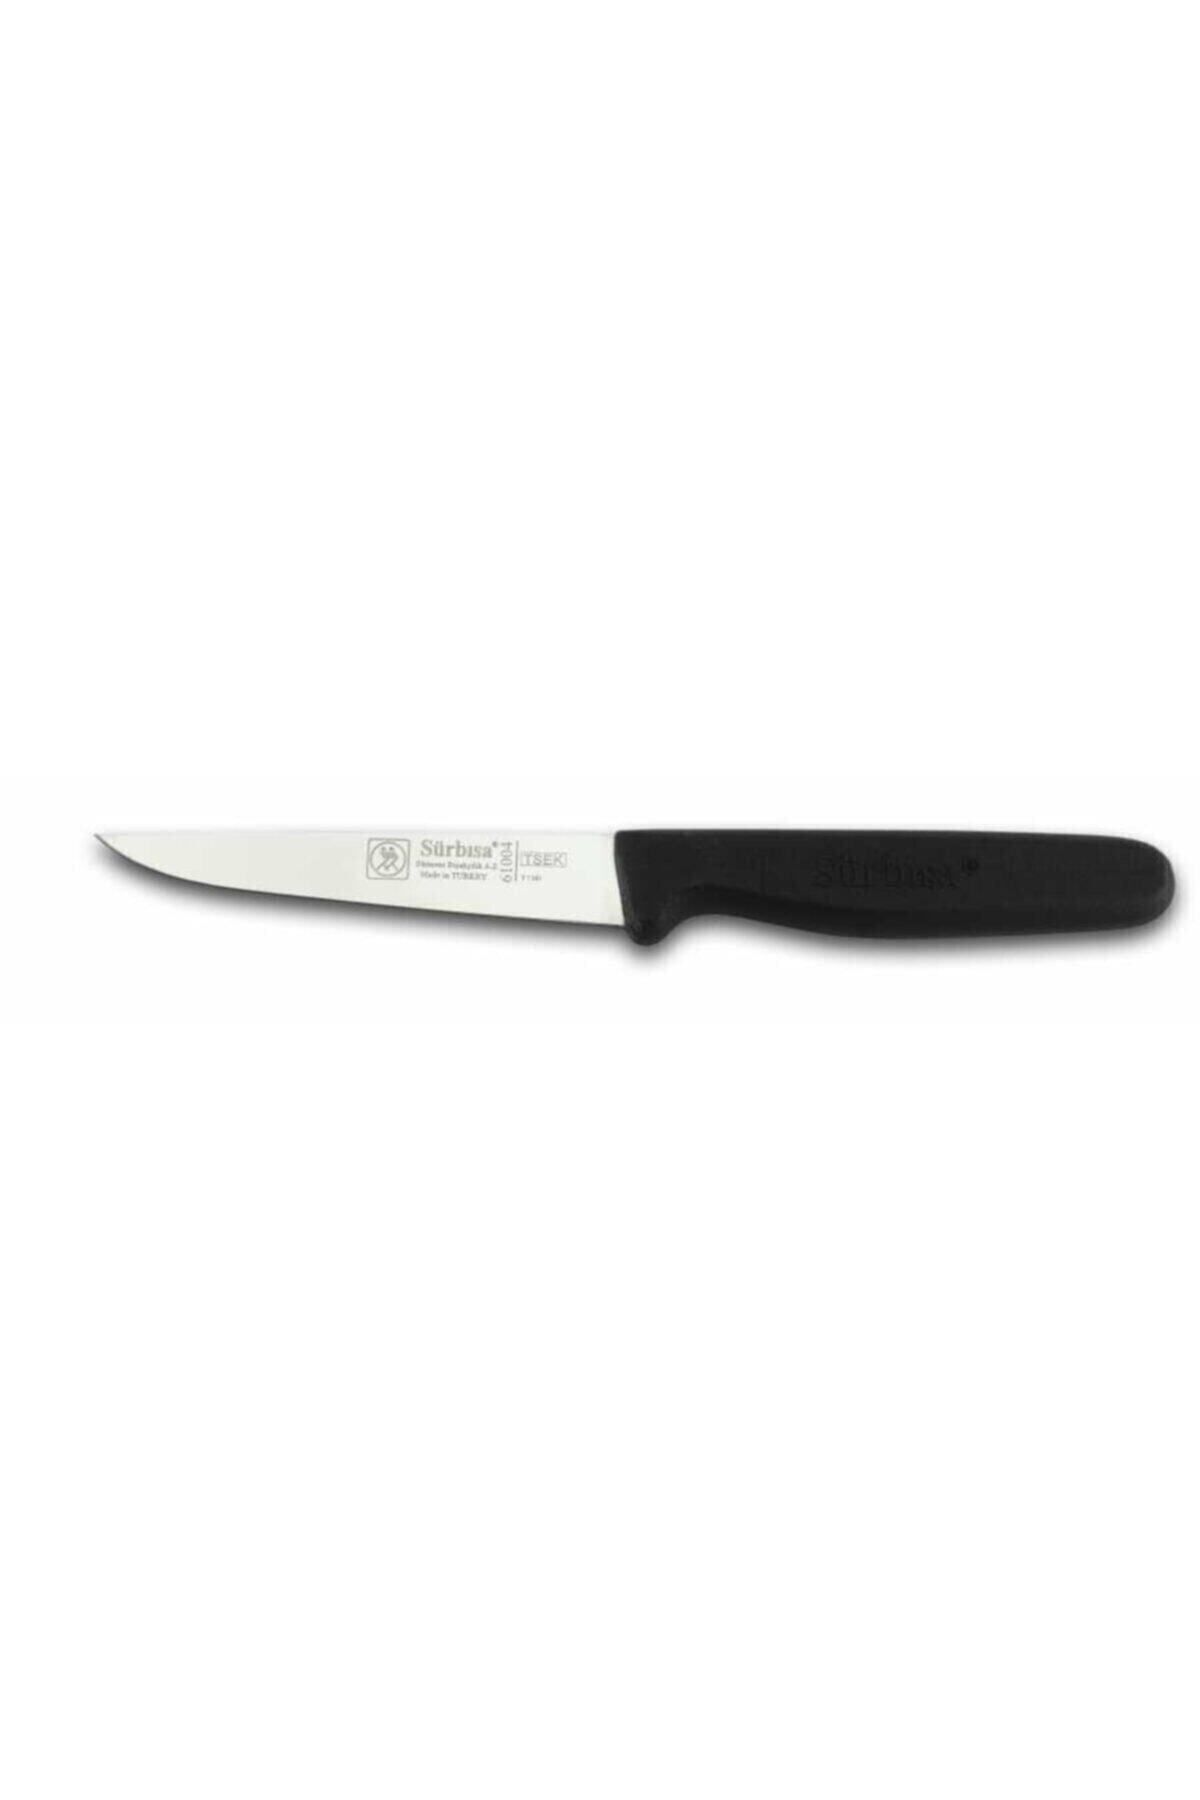 Sürbisa Sürmene Mutfak Bıçağı No:61004 (SEBZE PİMSİZ) Karışık Renk